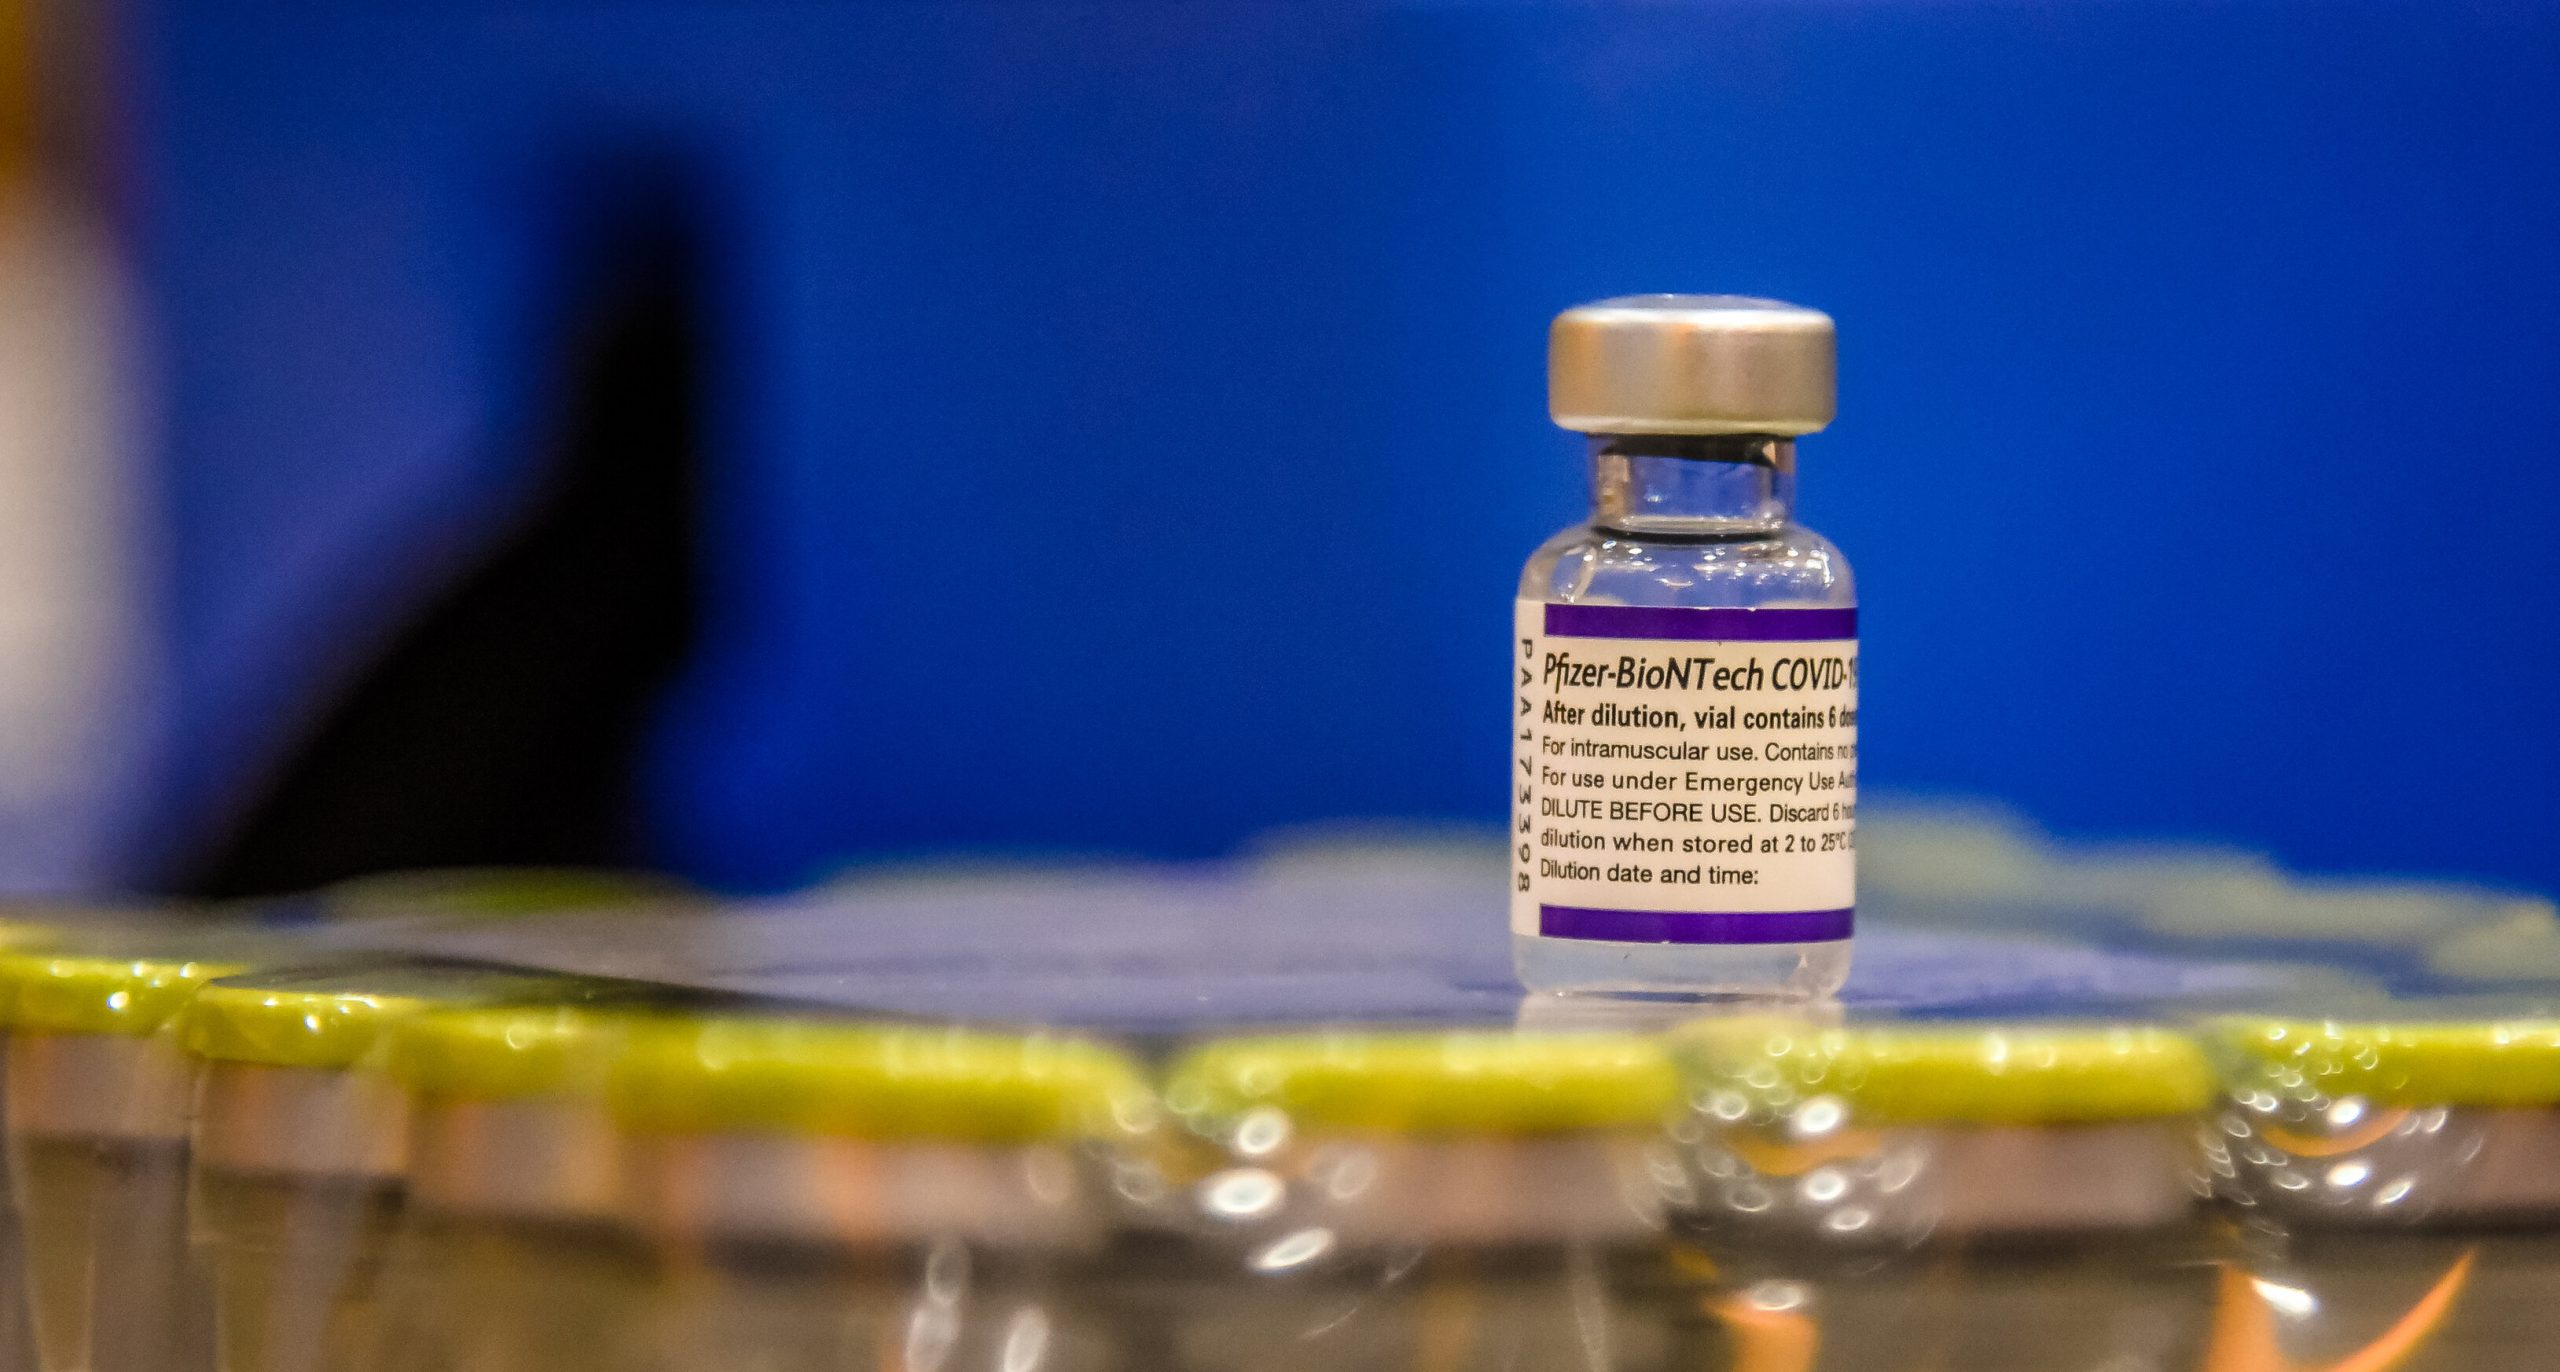 Pfizer are capacitatea de a dezvolta un vaccin specific variantei Omicron în cel mult 100 de zile